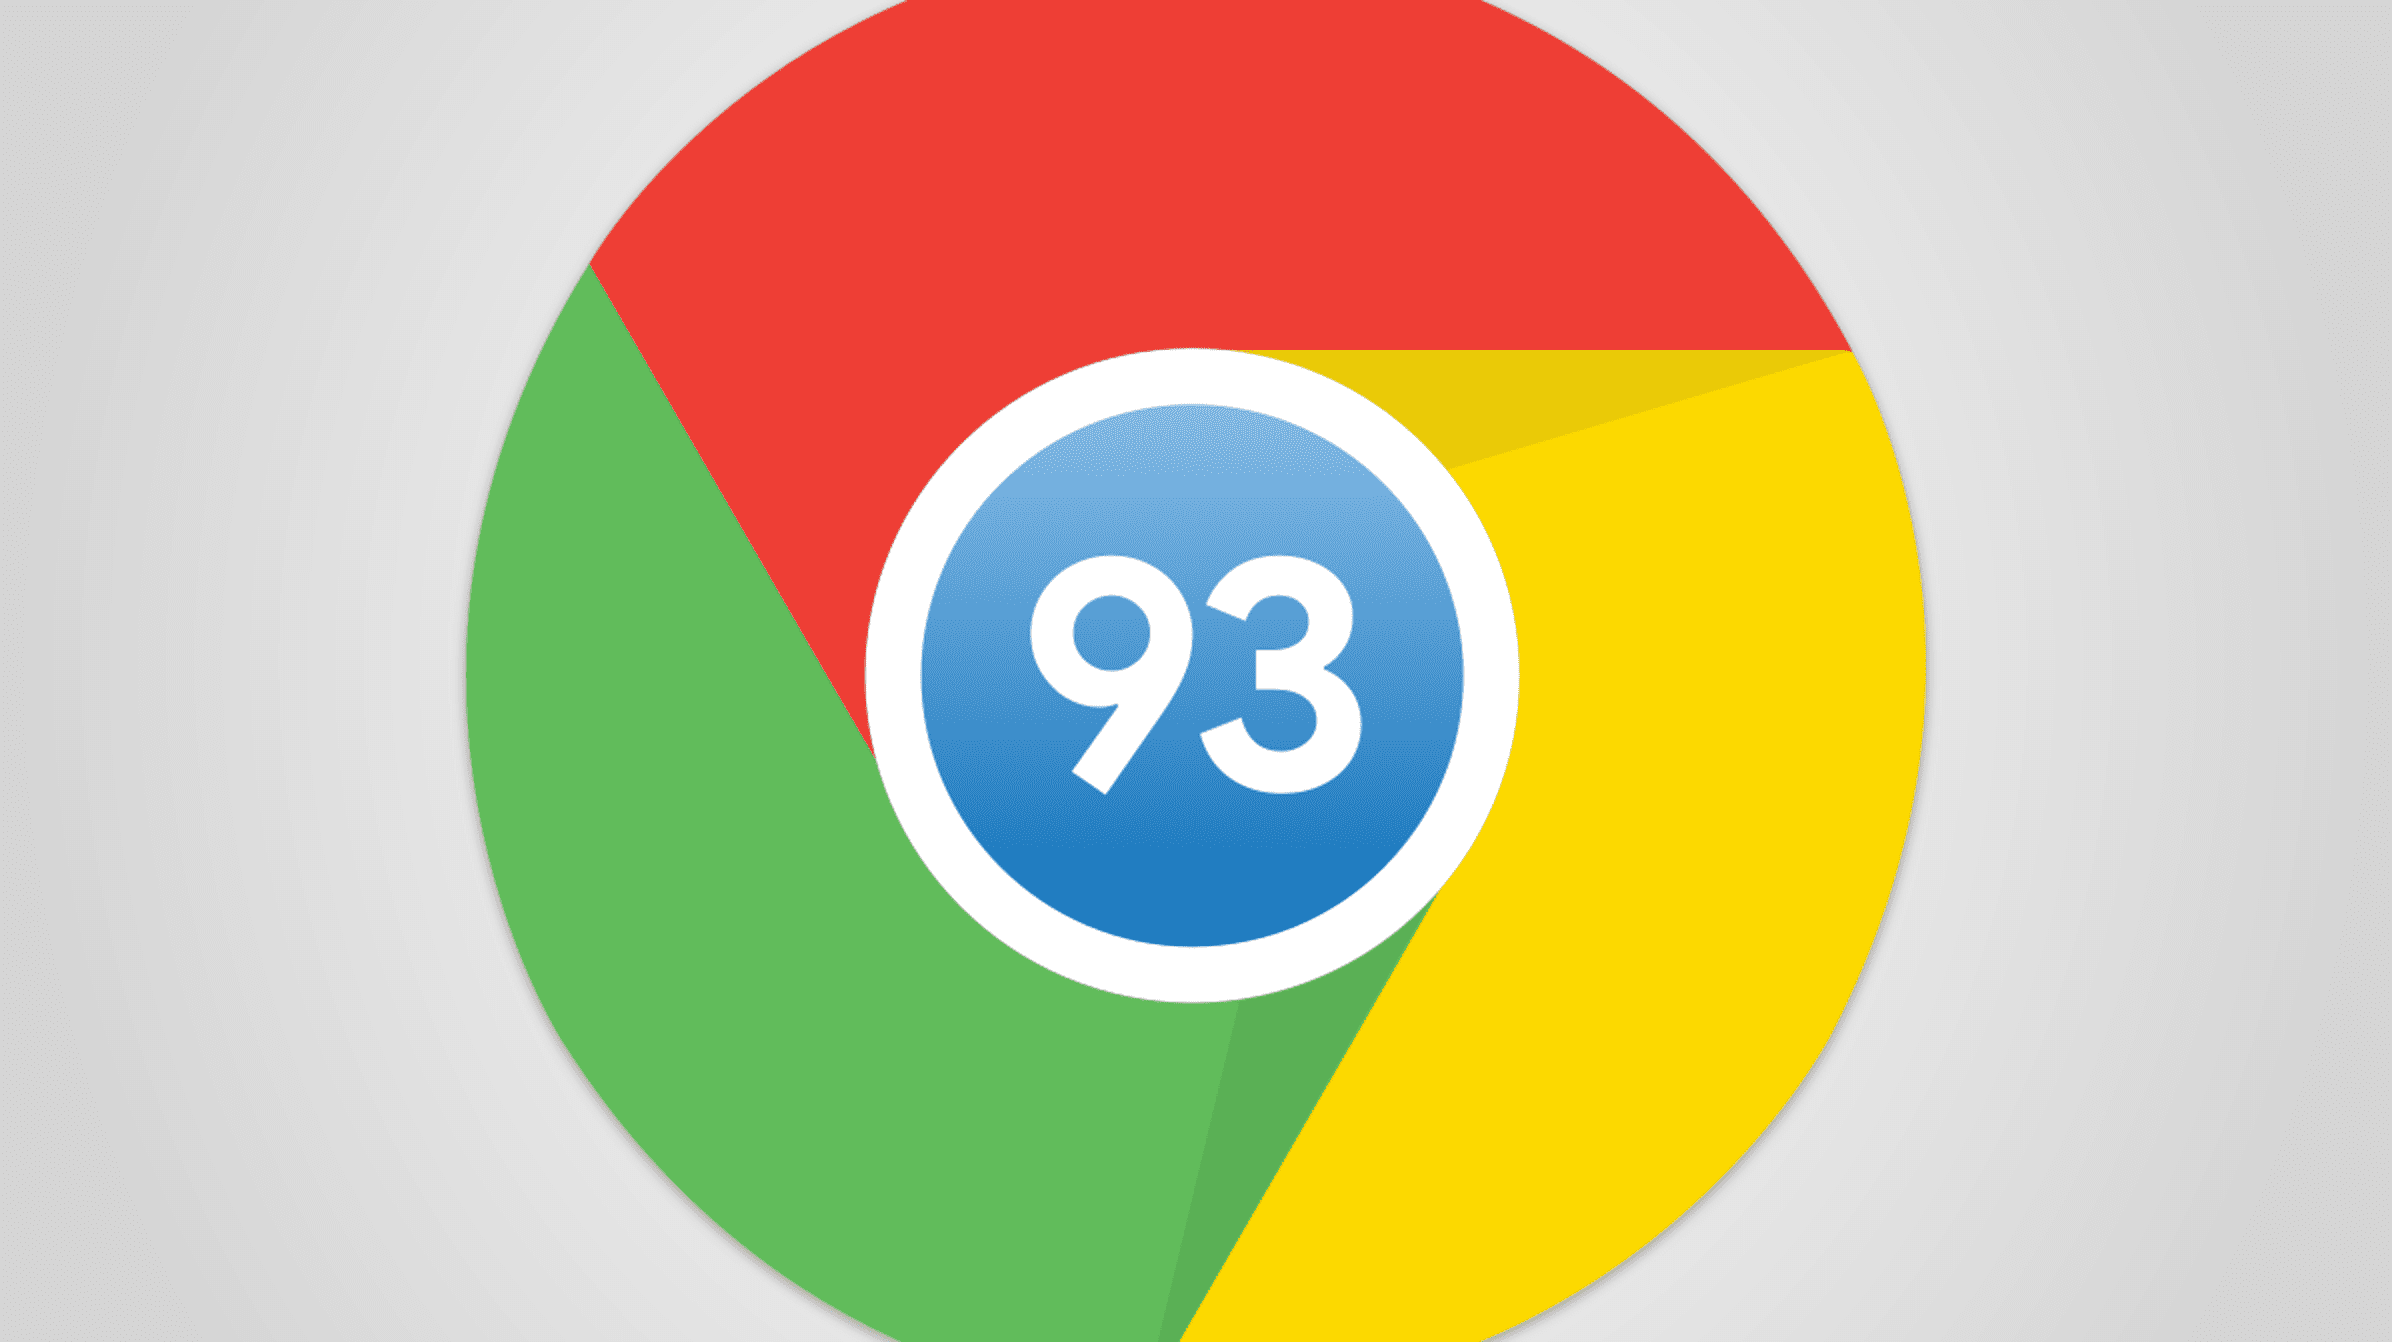 Chrome 93 ist hier für Mac, Windows, Android und iPhone 295